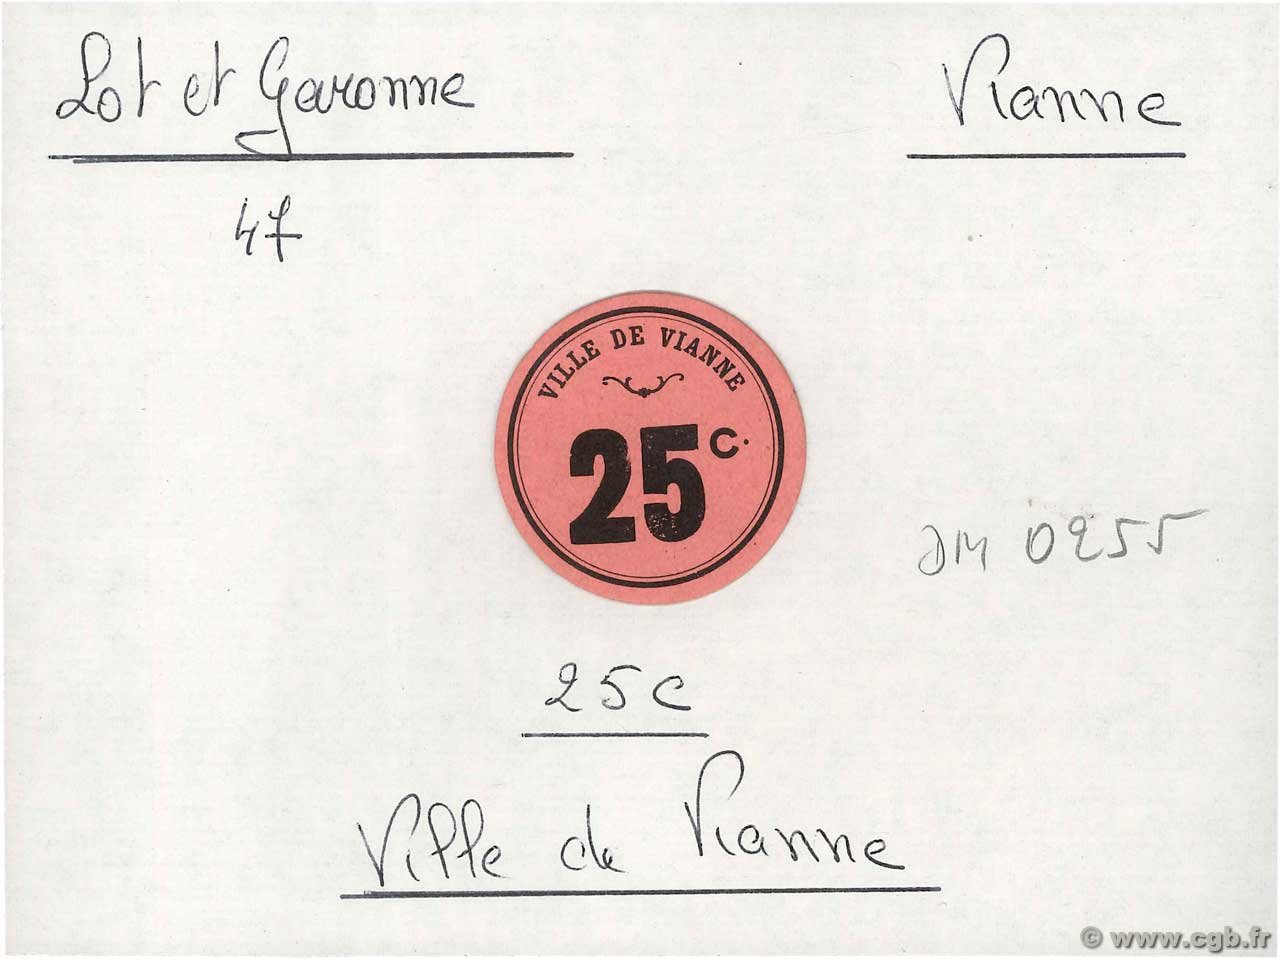 25 Centimes FRANCE regionalismo y varios Vianne 1914 JP.47-266 EBC